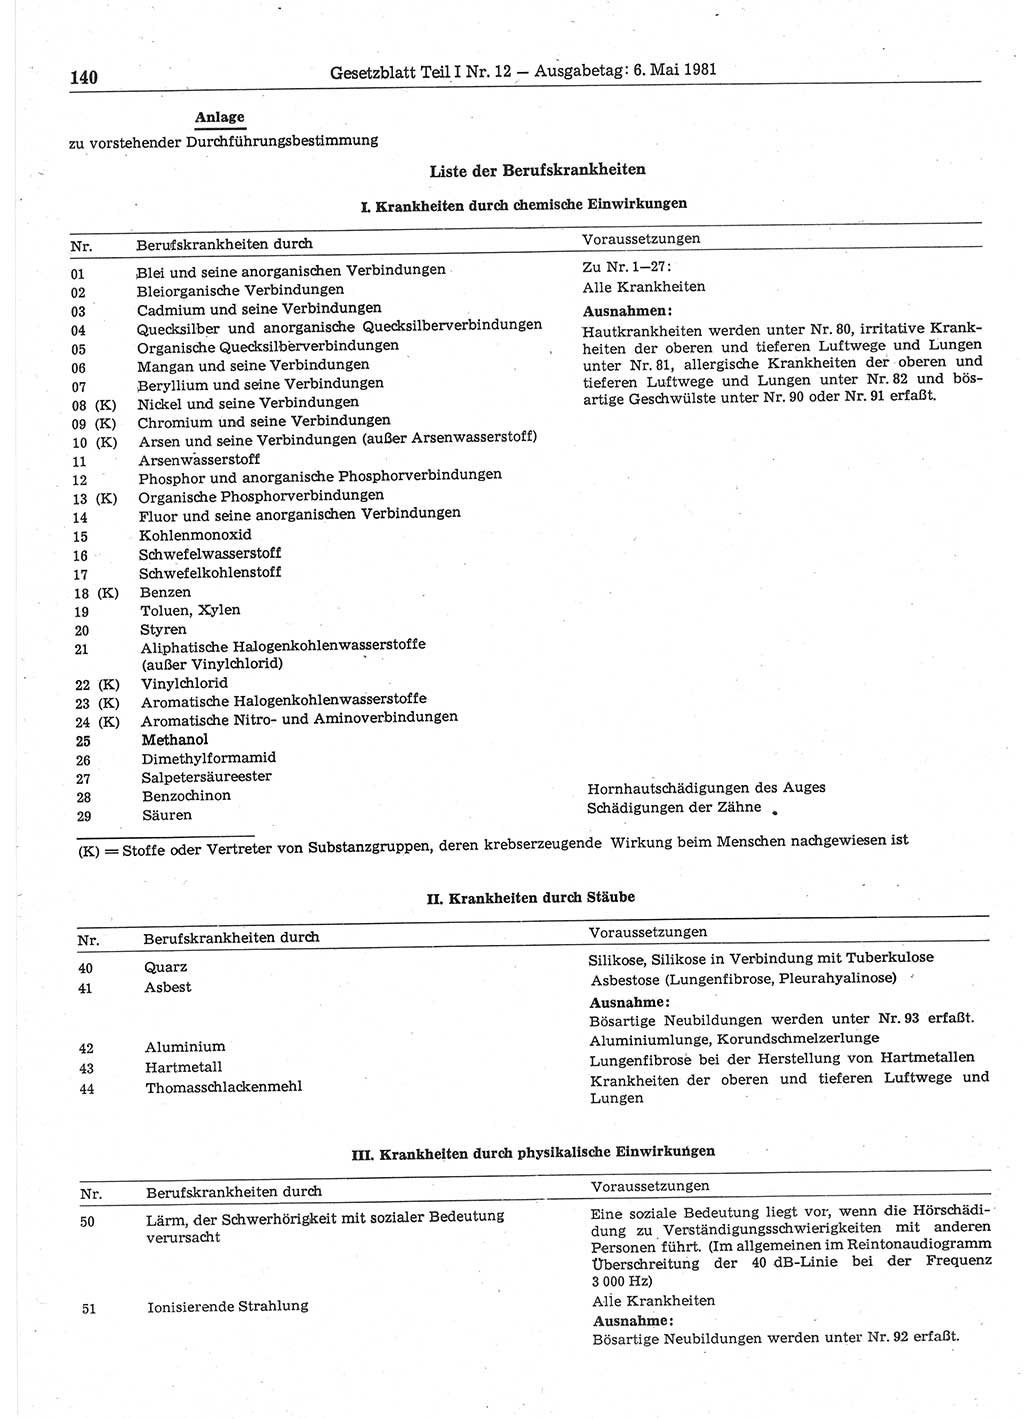 Gesetzblatt (GBl.) der Deutschen Demokratischen Republik (DDR) Teil Ⅰ 1981, Seite 140 (GBl. DDR Ⅰ 1981, S. 140)